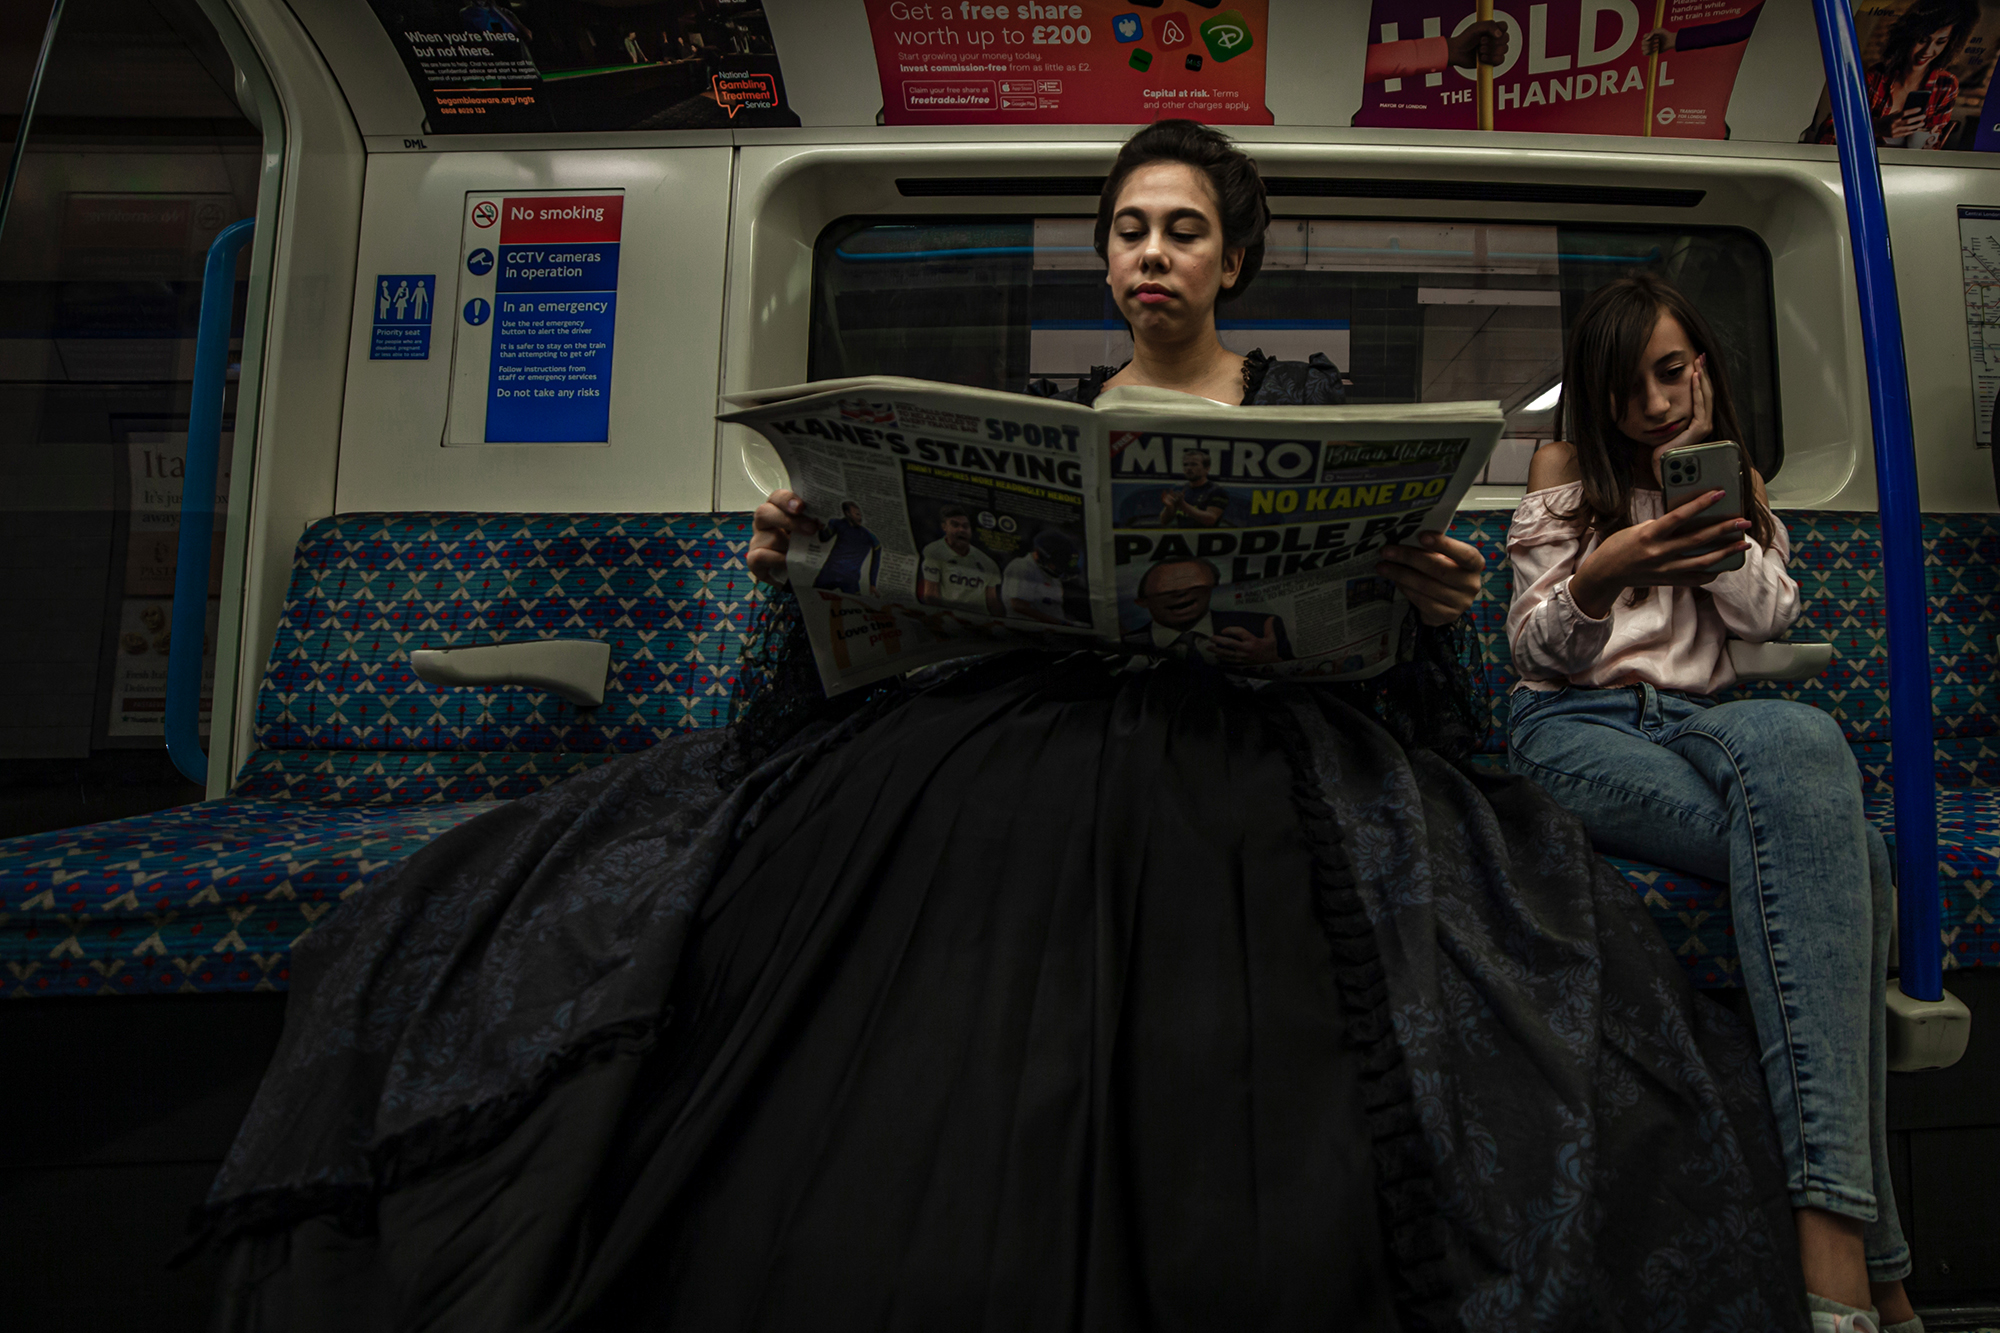 Halasi Eszter sorozata a lányáról a londoni metrón